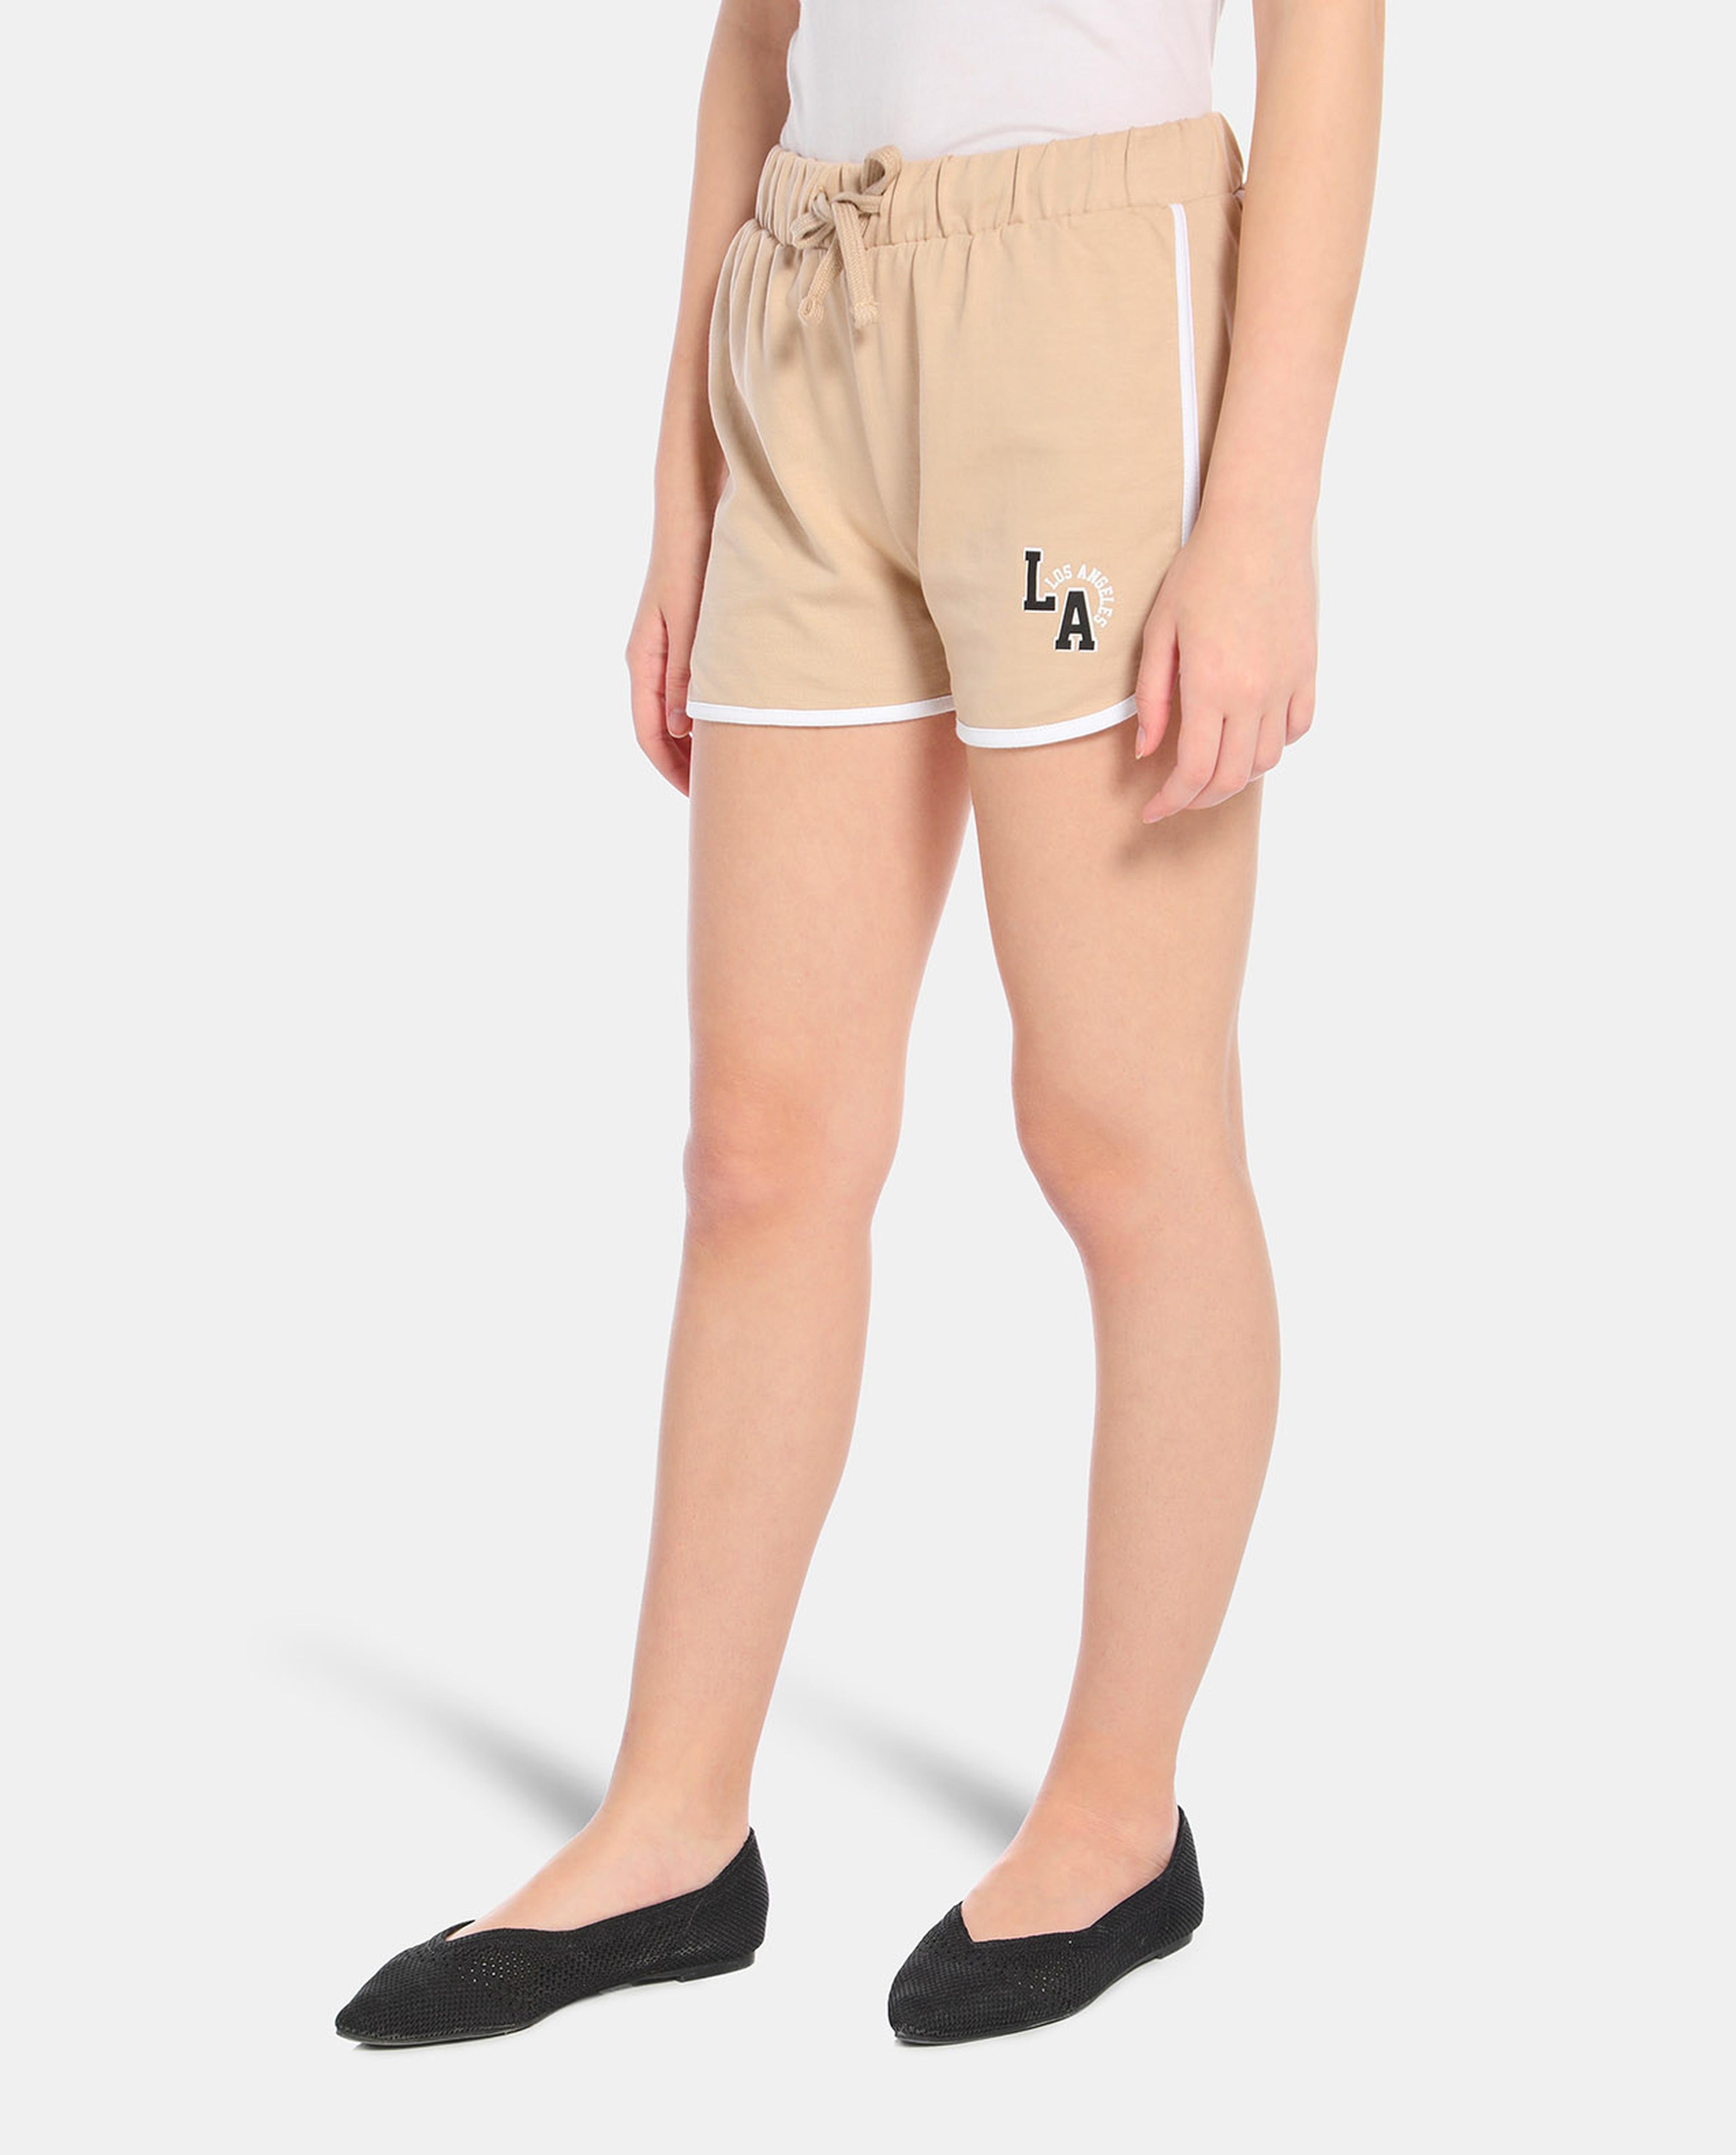 Brown Printed Casual Shorts